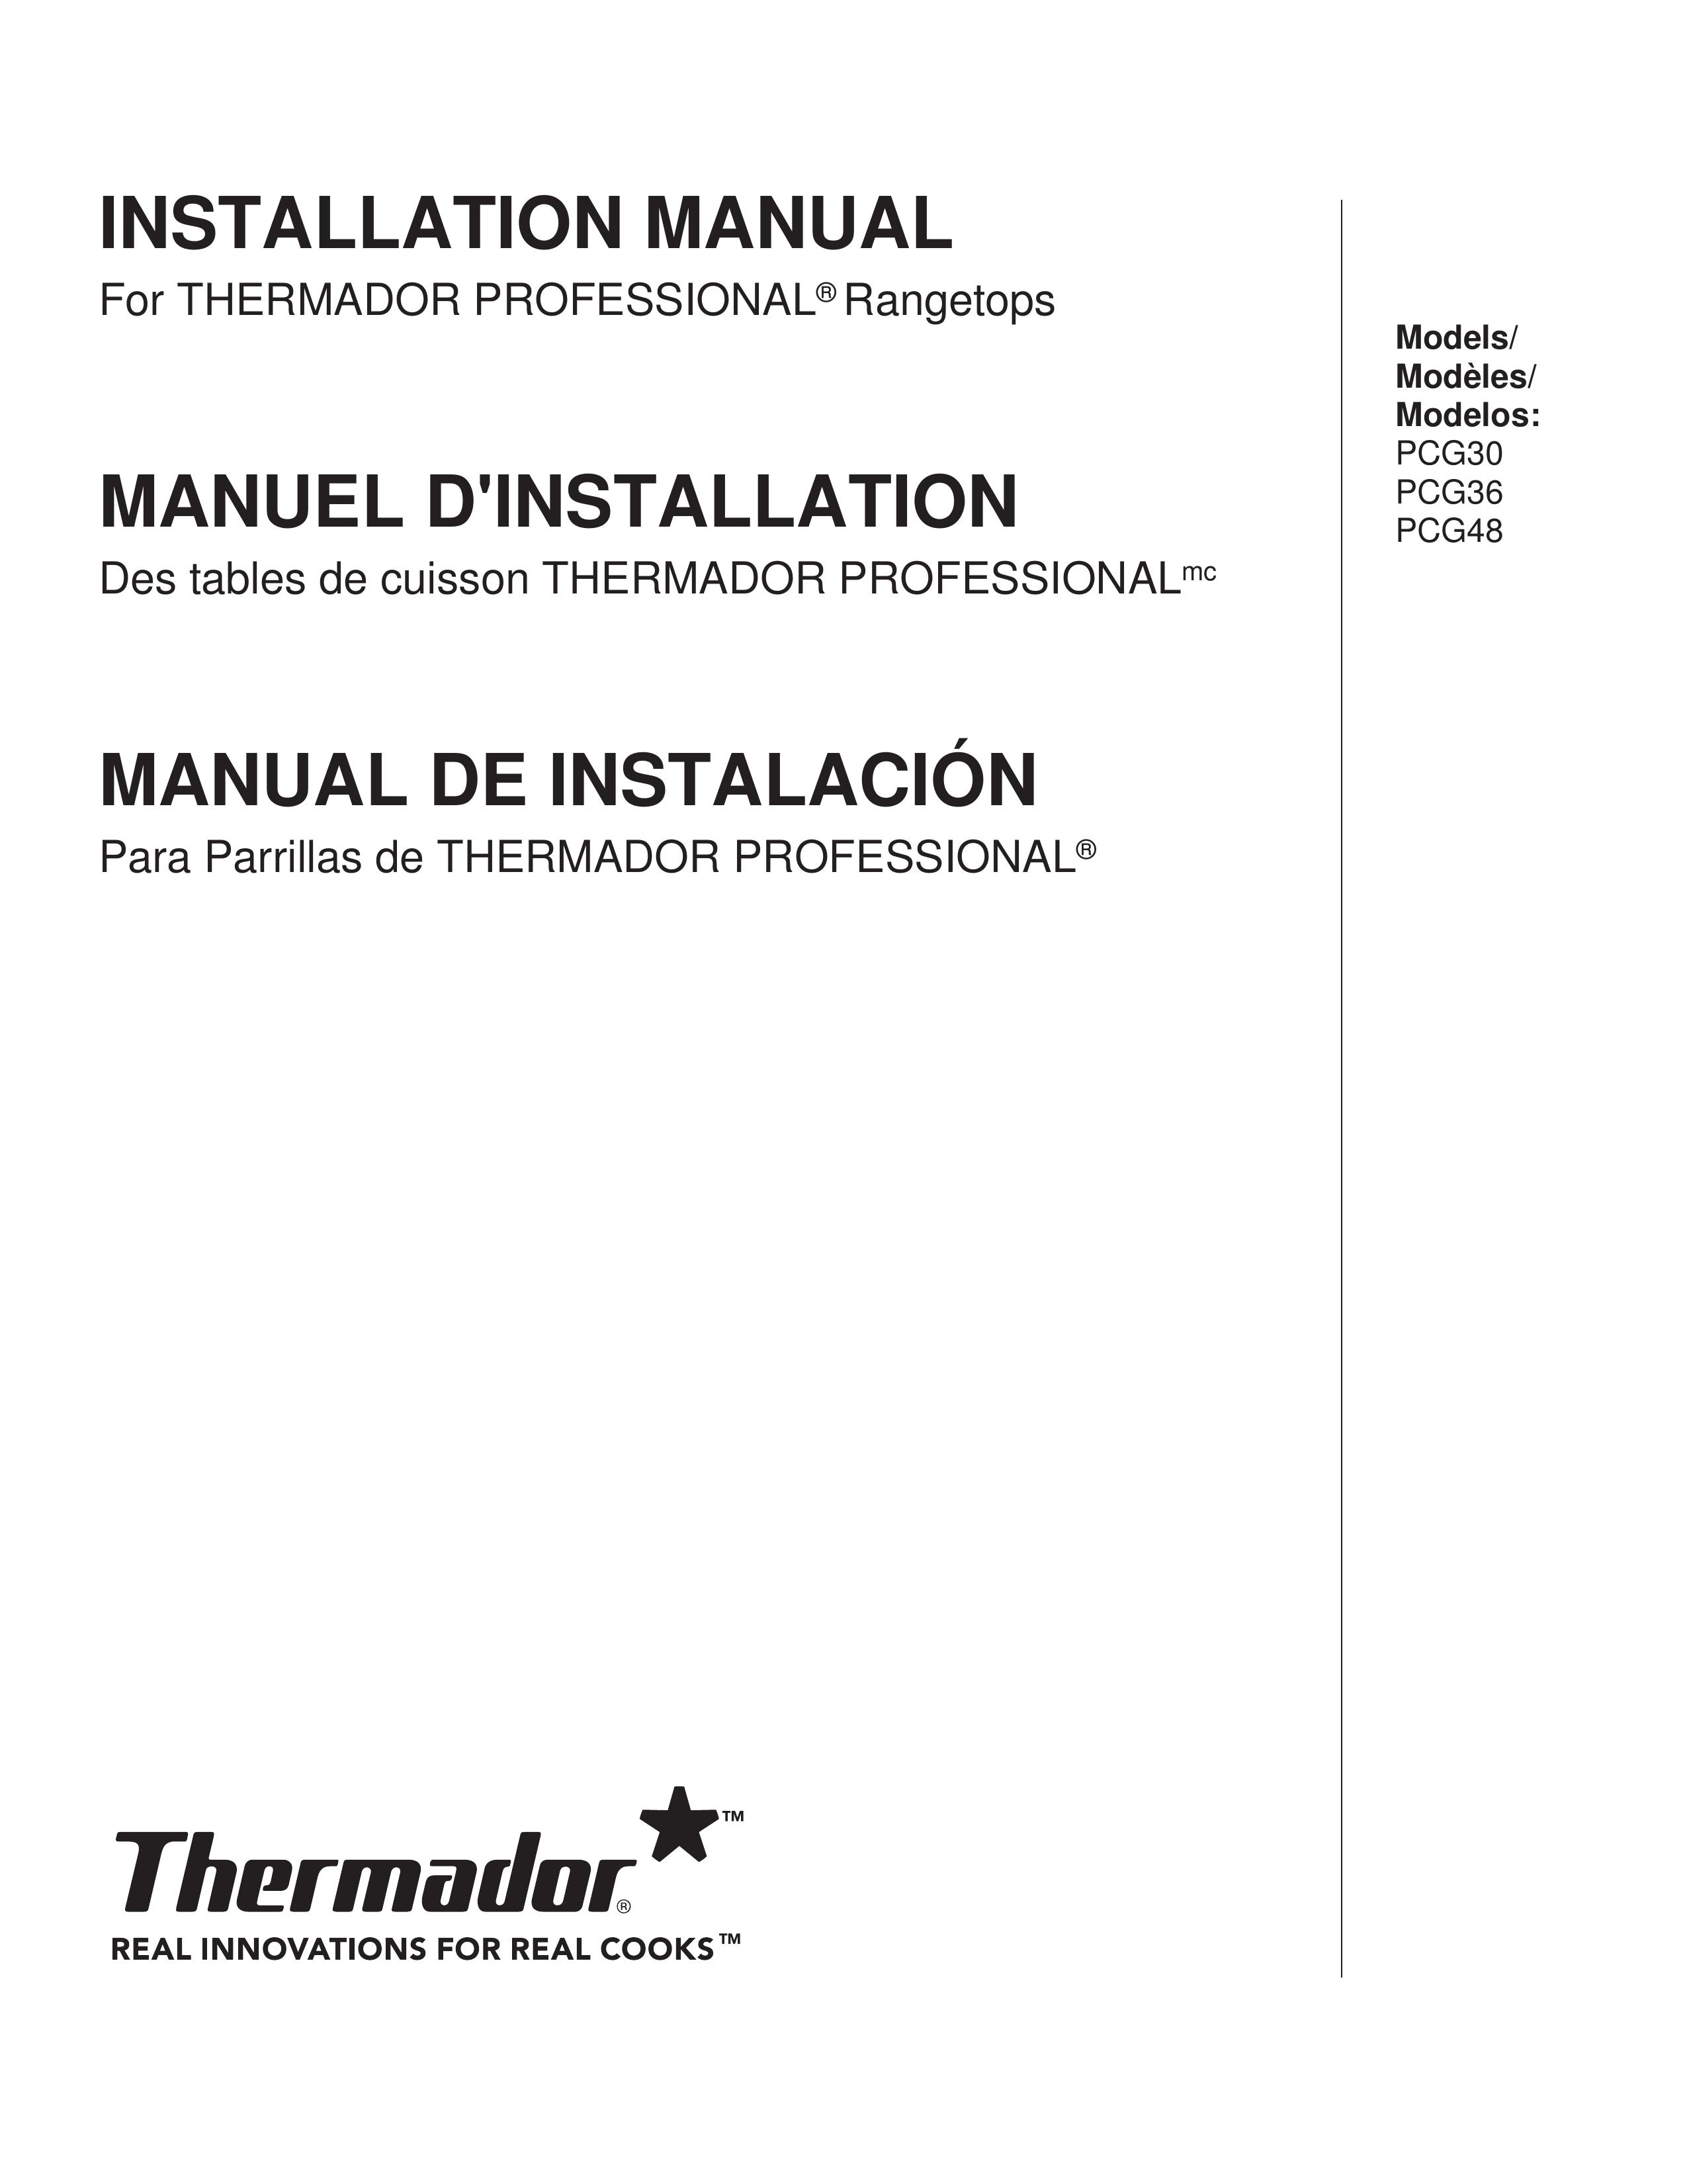 Thermador PCG48 Wok User Manual